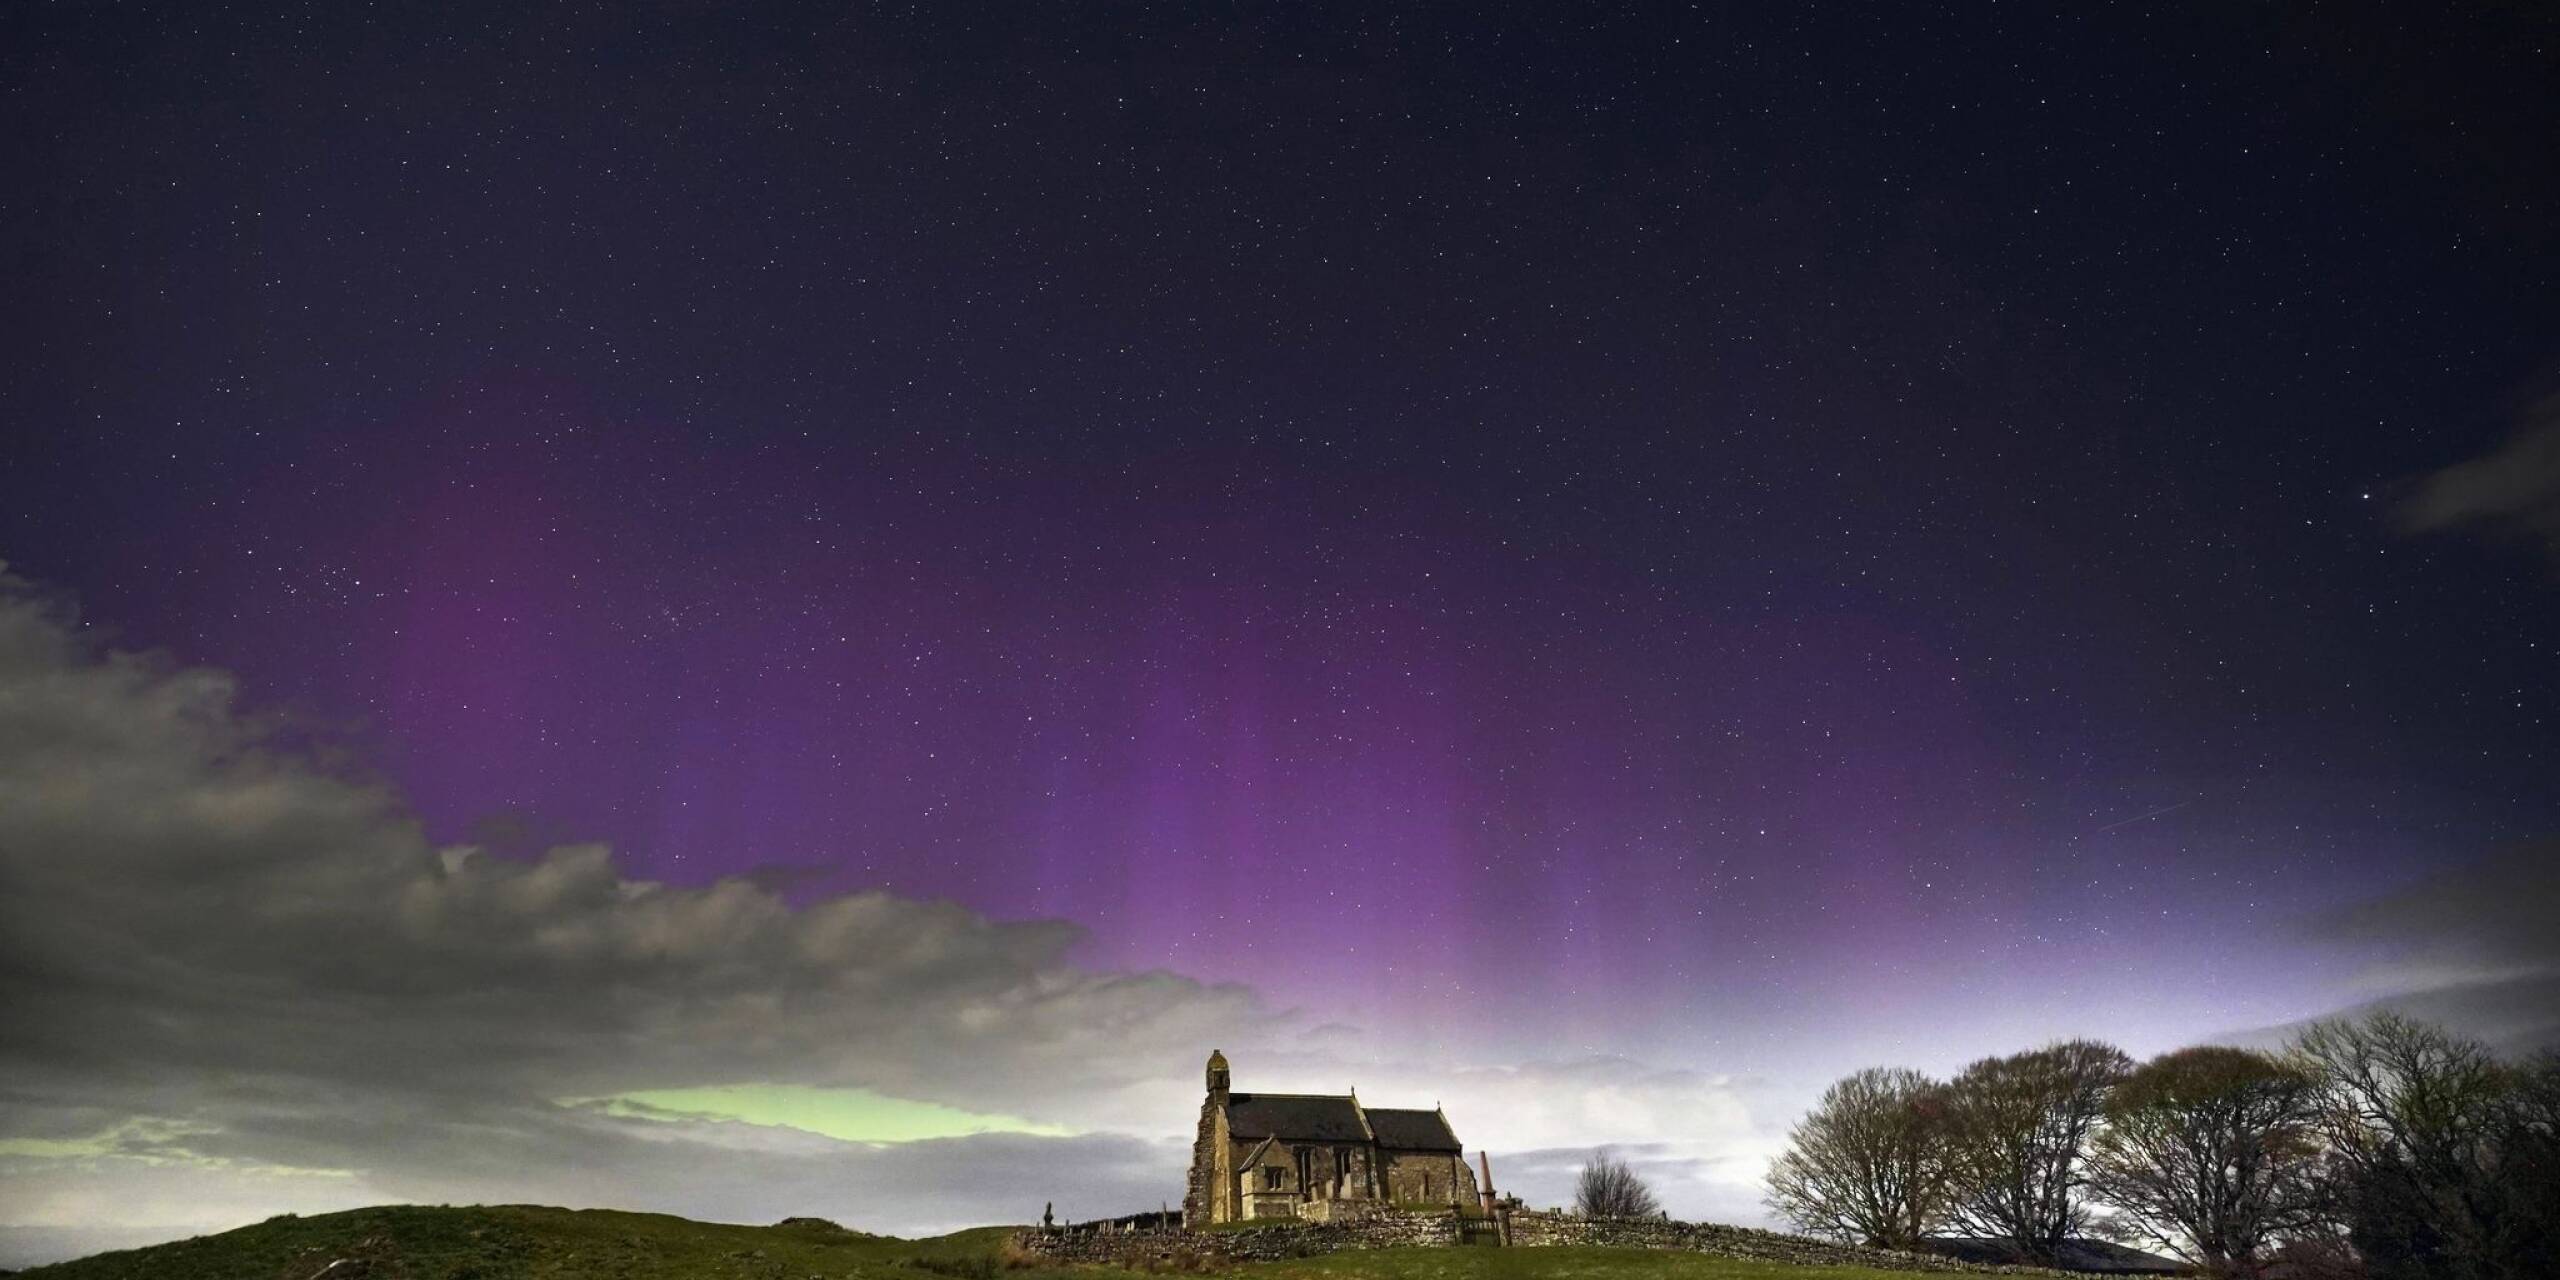 Ein erhabenes Schauspiel: Das Polarlicht, auch bekannt als Nordlicht, erhellt den Himmel kurz vor Mitternacht über der St. Aidan's Church im britischen Dorf Thockrington.